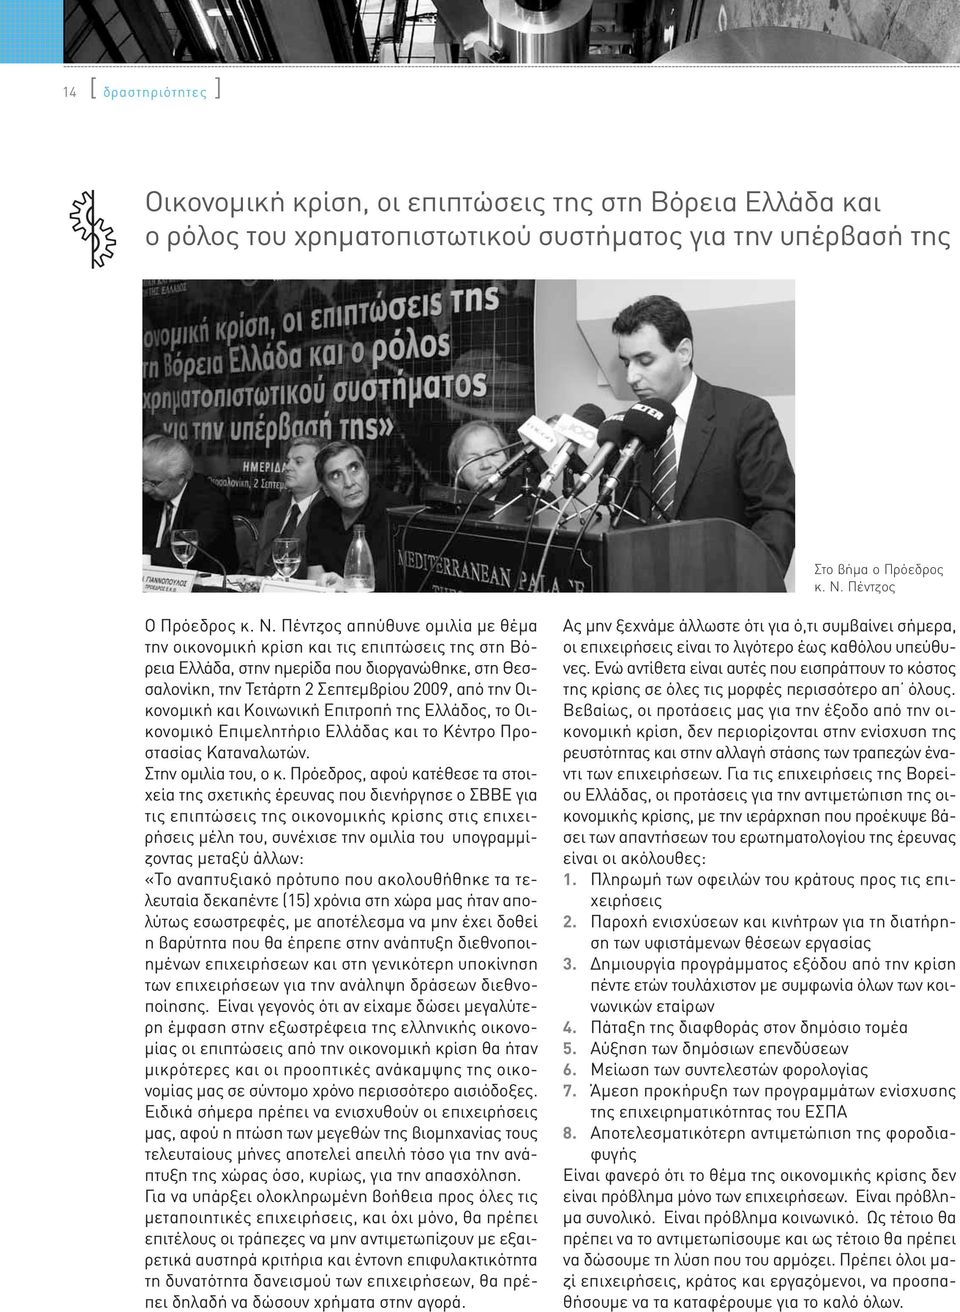 Πέντζος απηύθυνε ομιλία με θέμα την οικονομική κρίση και τις επιπτώσεις της στη Βόρεια Ελλάδα, στην ημερίδα που διοργανώθηκε, στη Θεσσαλονίκη, την Τετάρτη 2 Σεπτεμβρίου 2009, από την Οικονομική και